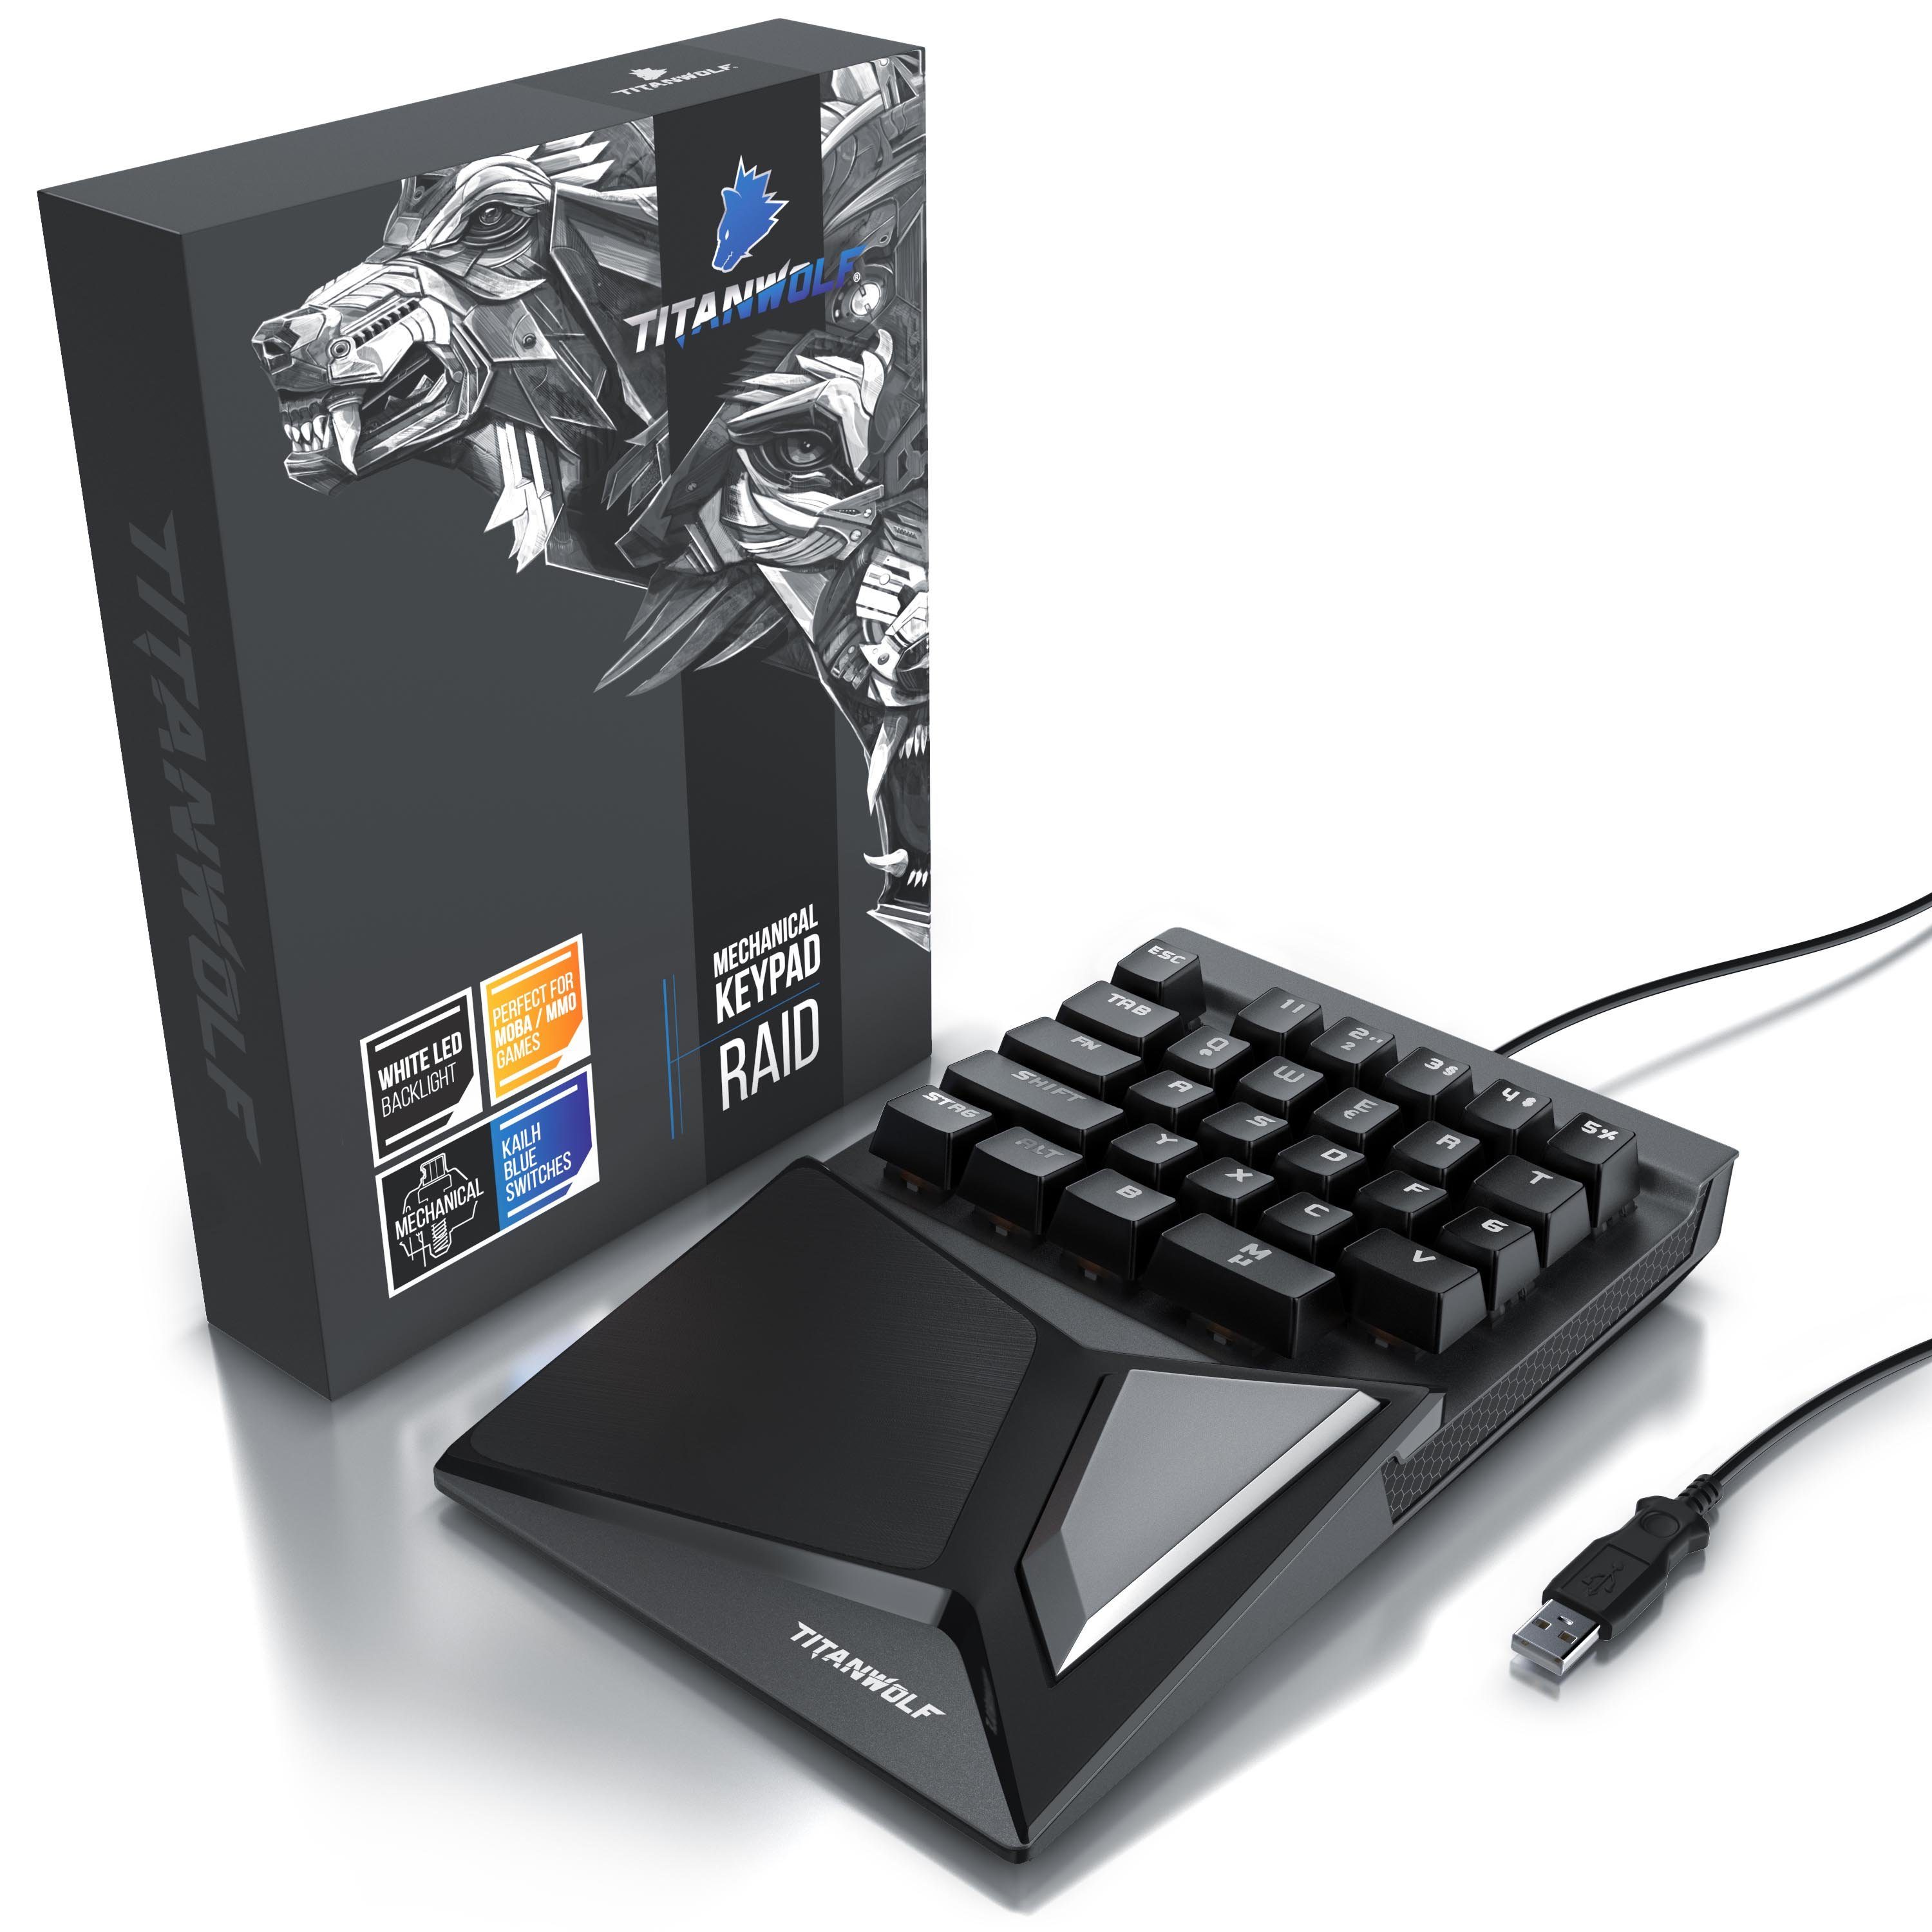 28 Keypad (mechanische Gaming-Tastatur Tasten, Tastatur Gaming mit Titanwolf Einhandtastatur)